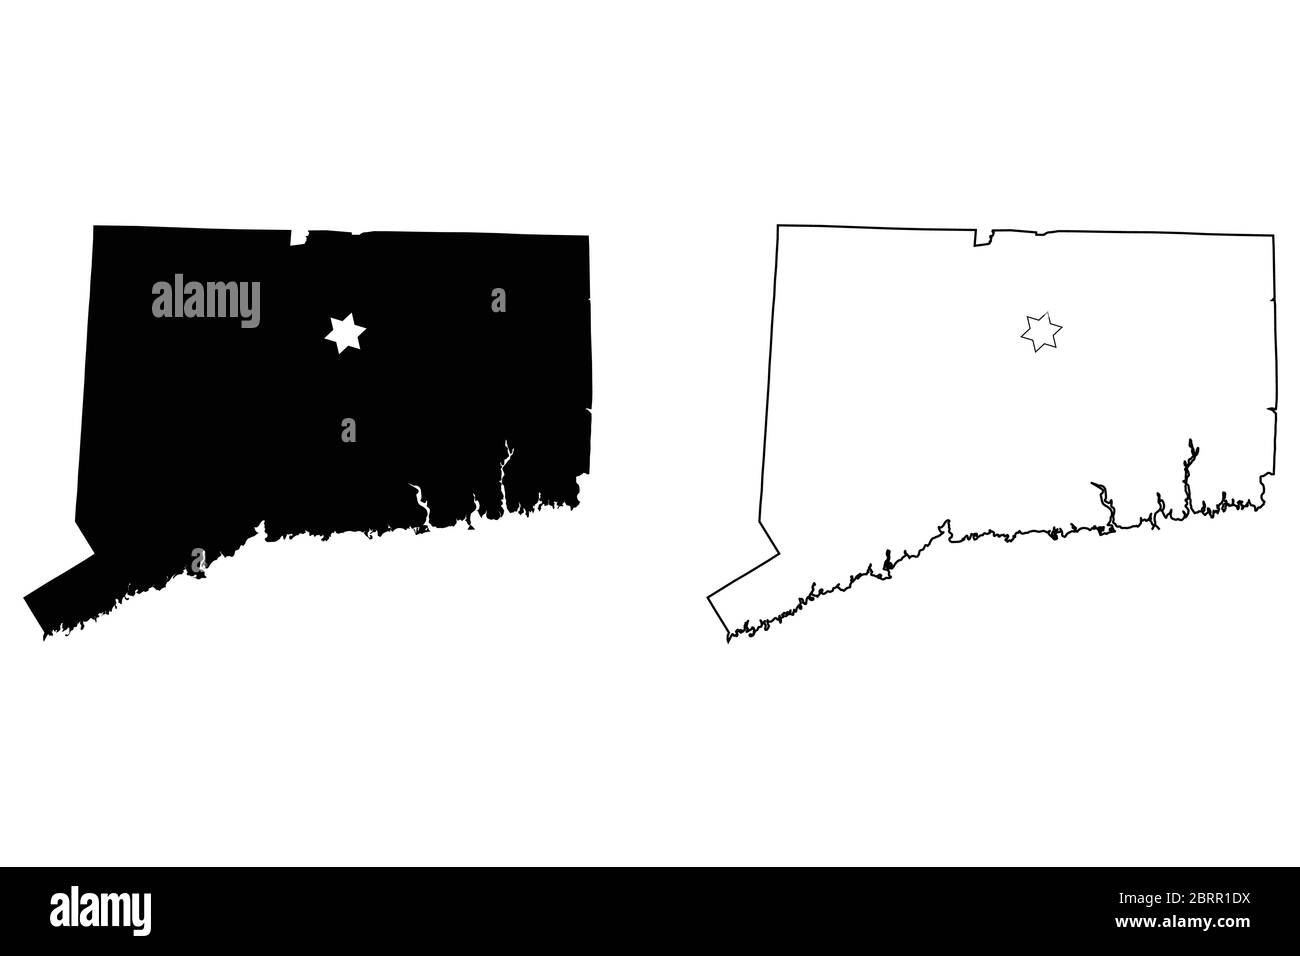 Connecticut CT State Map USA mit Capital City Star in Hartford. Schwarze Silhouette und Umrisskarten auf weißem Hintergrund isoliert. EPS-Vektor Stock Vektor